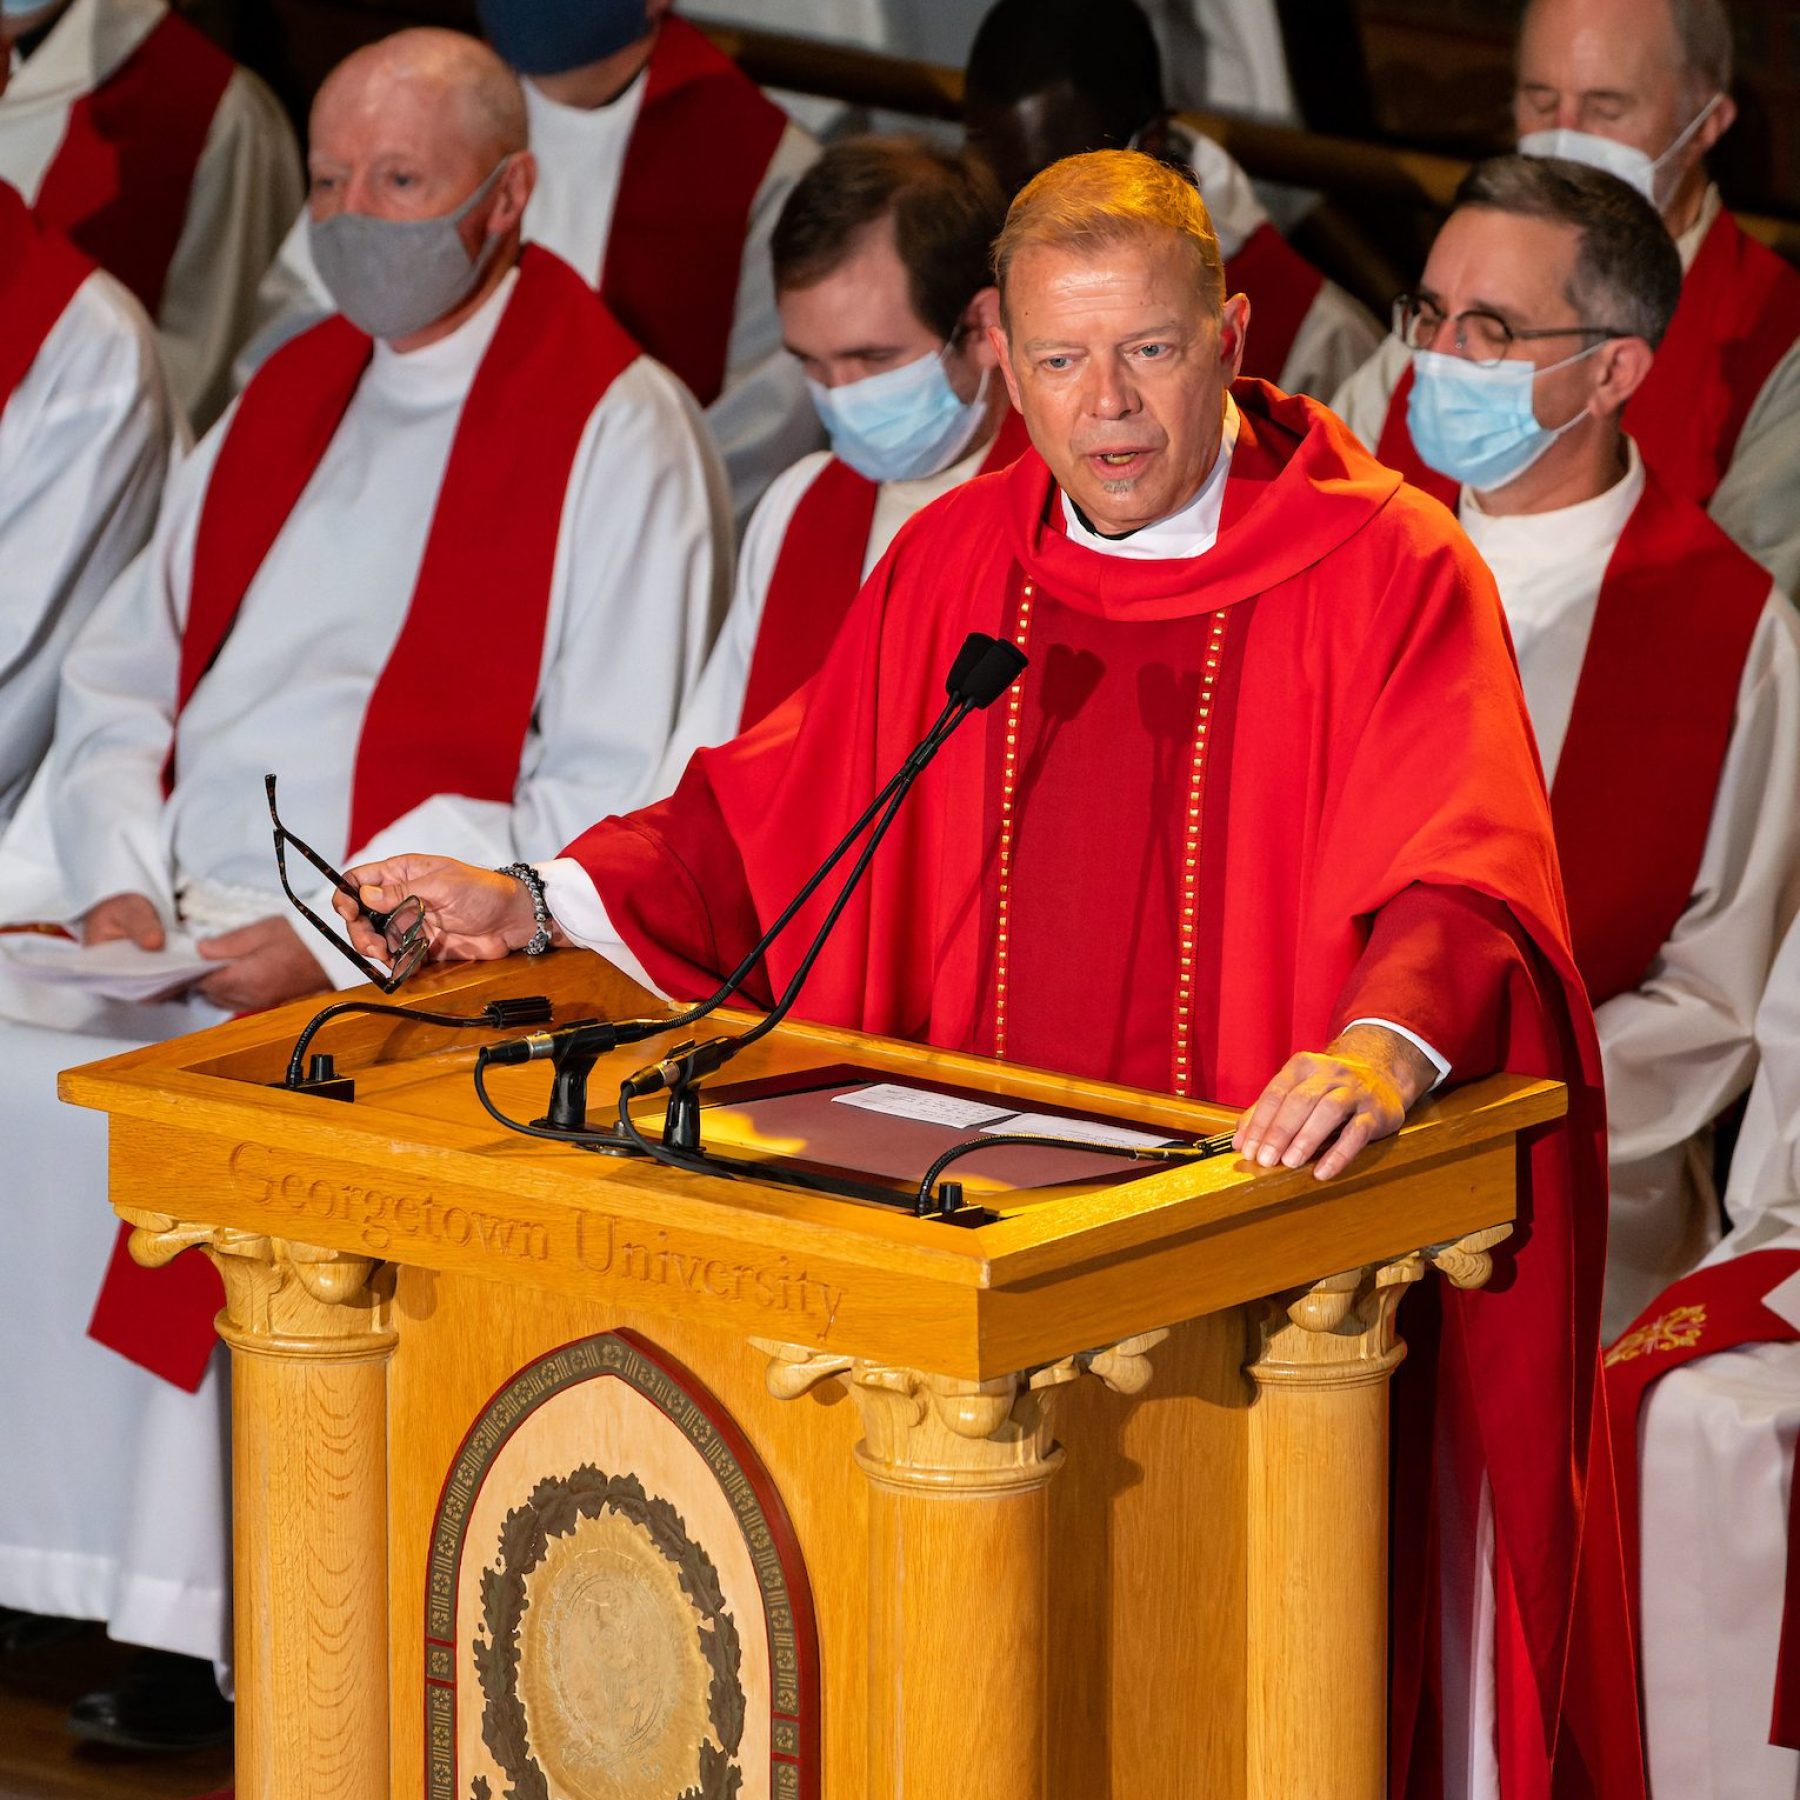 Fr. Greg Schenden, S.J., wears red robes while speaking at a podium